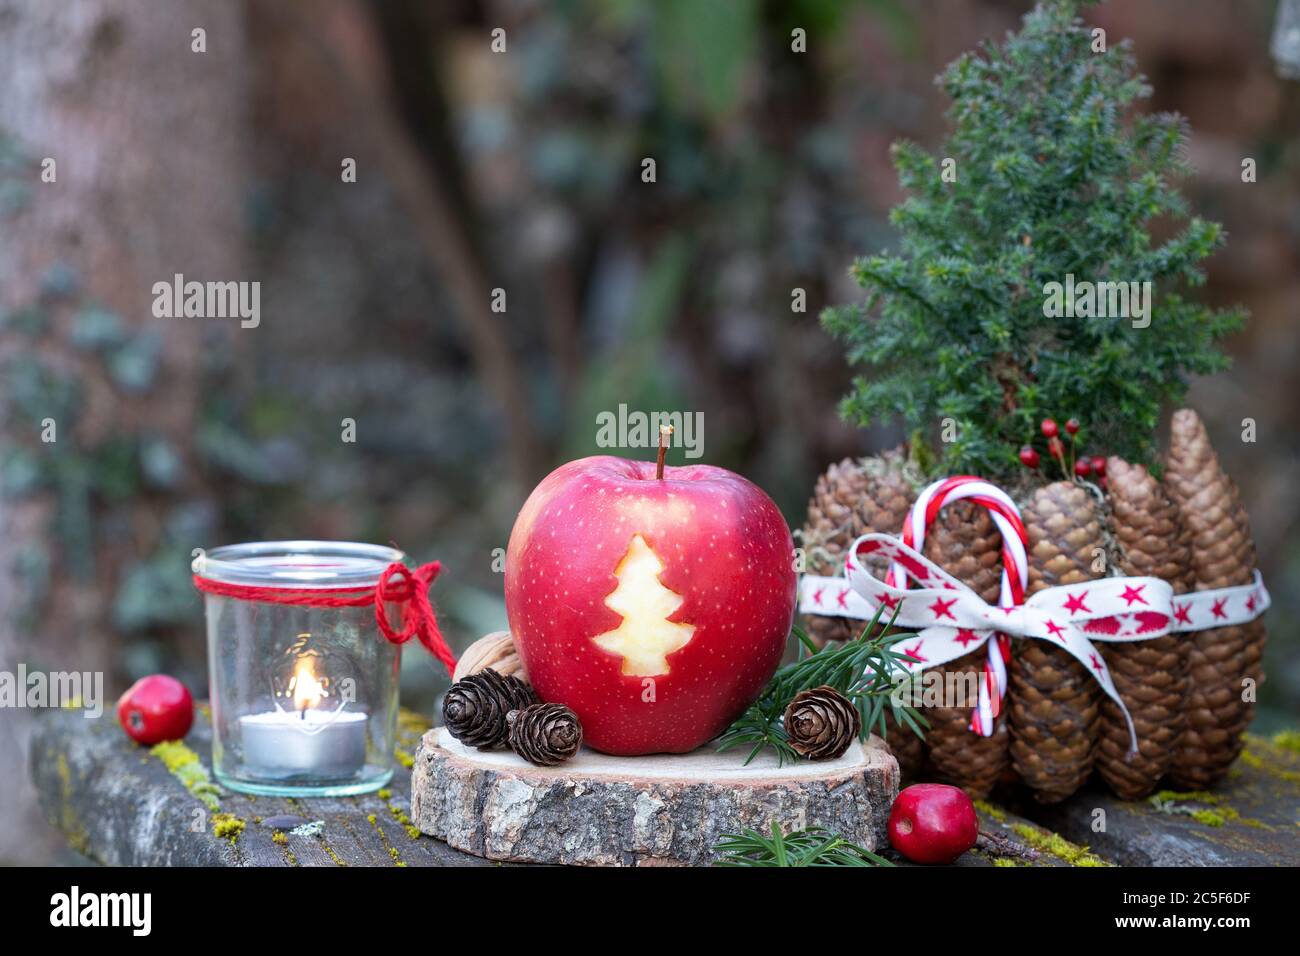 mela con ornamento dell'albero di natale e coni pentola come decorazione di natale Foto Stock